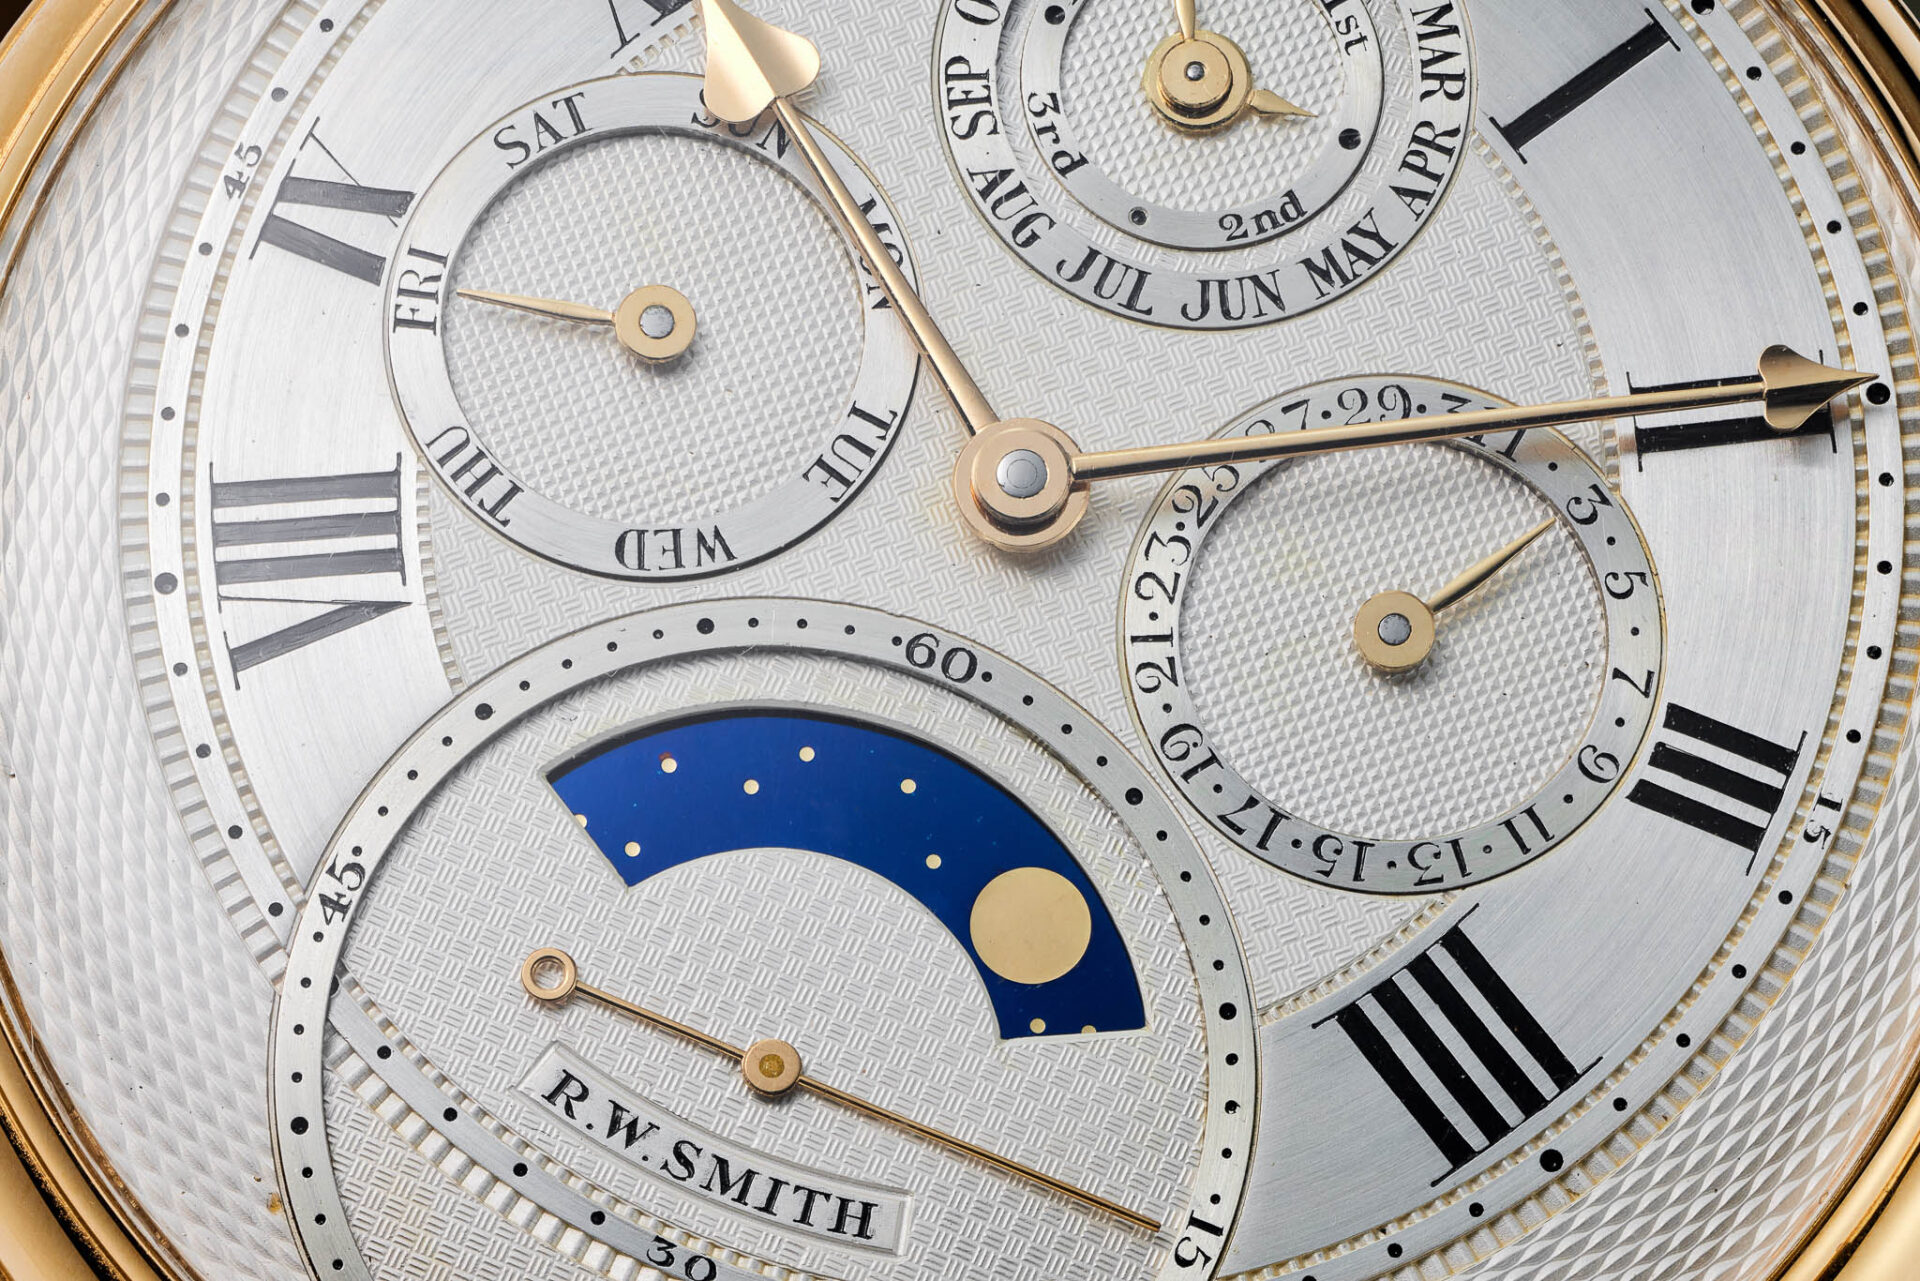 Roger Smith, montre de poche n°2 - Vente de montres Phillips des 10 et 11 juin 2023